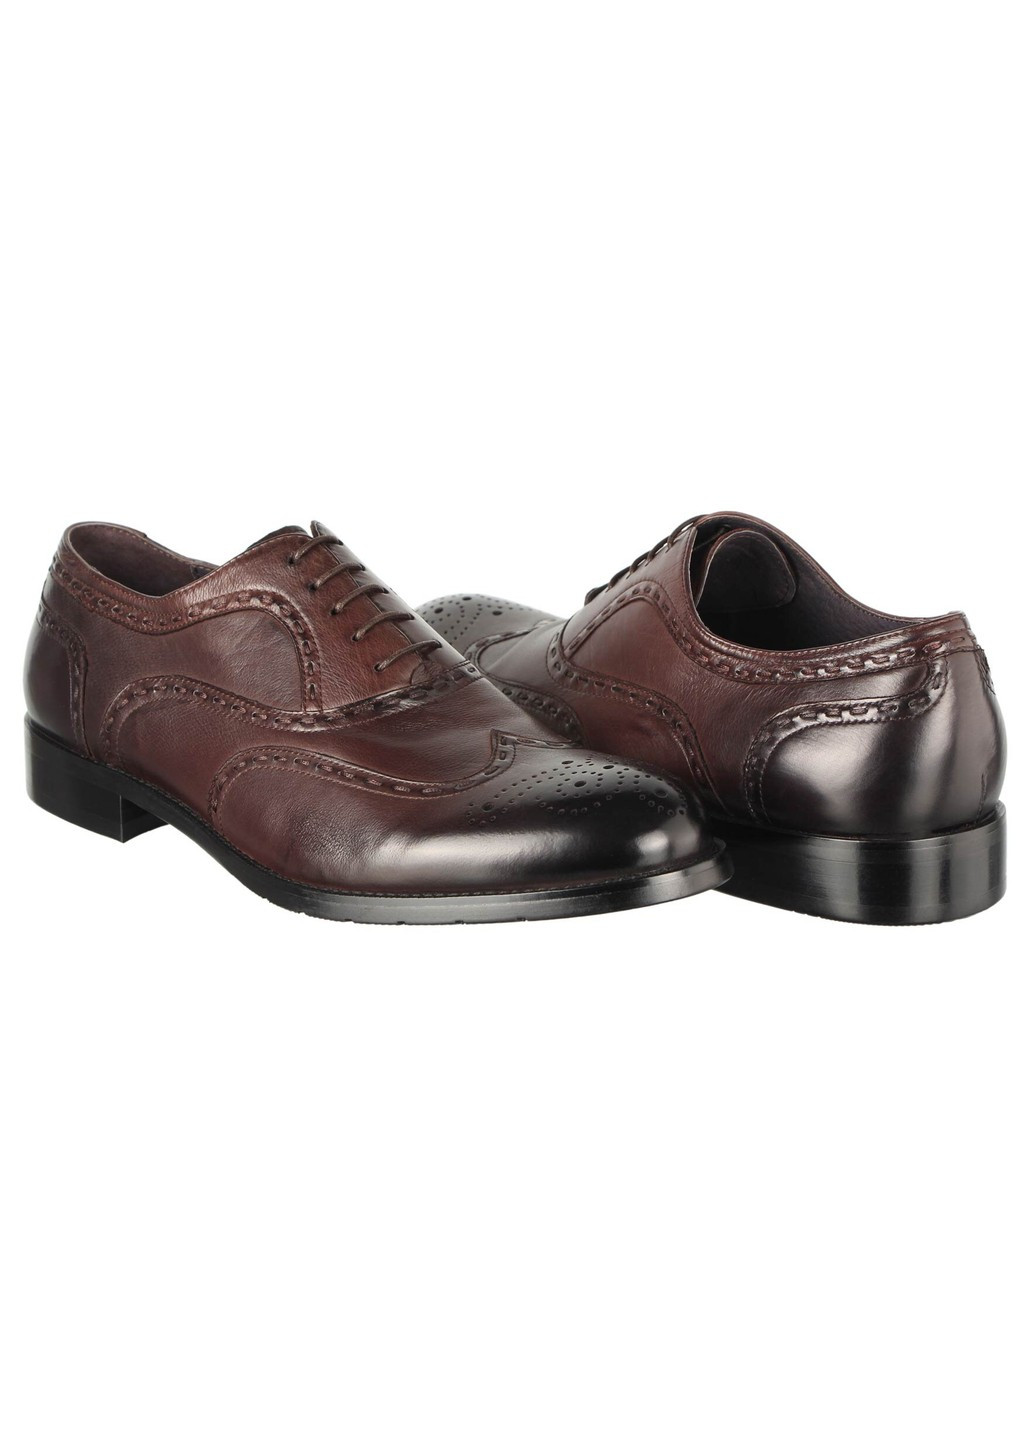 Коричневые мужские классические туфли 19961 Cosottinni на шнурках